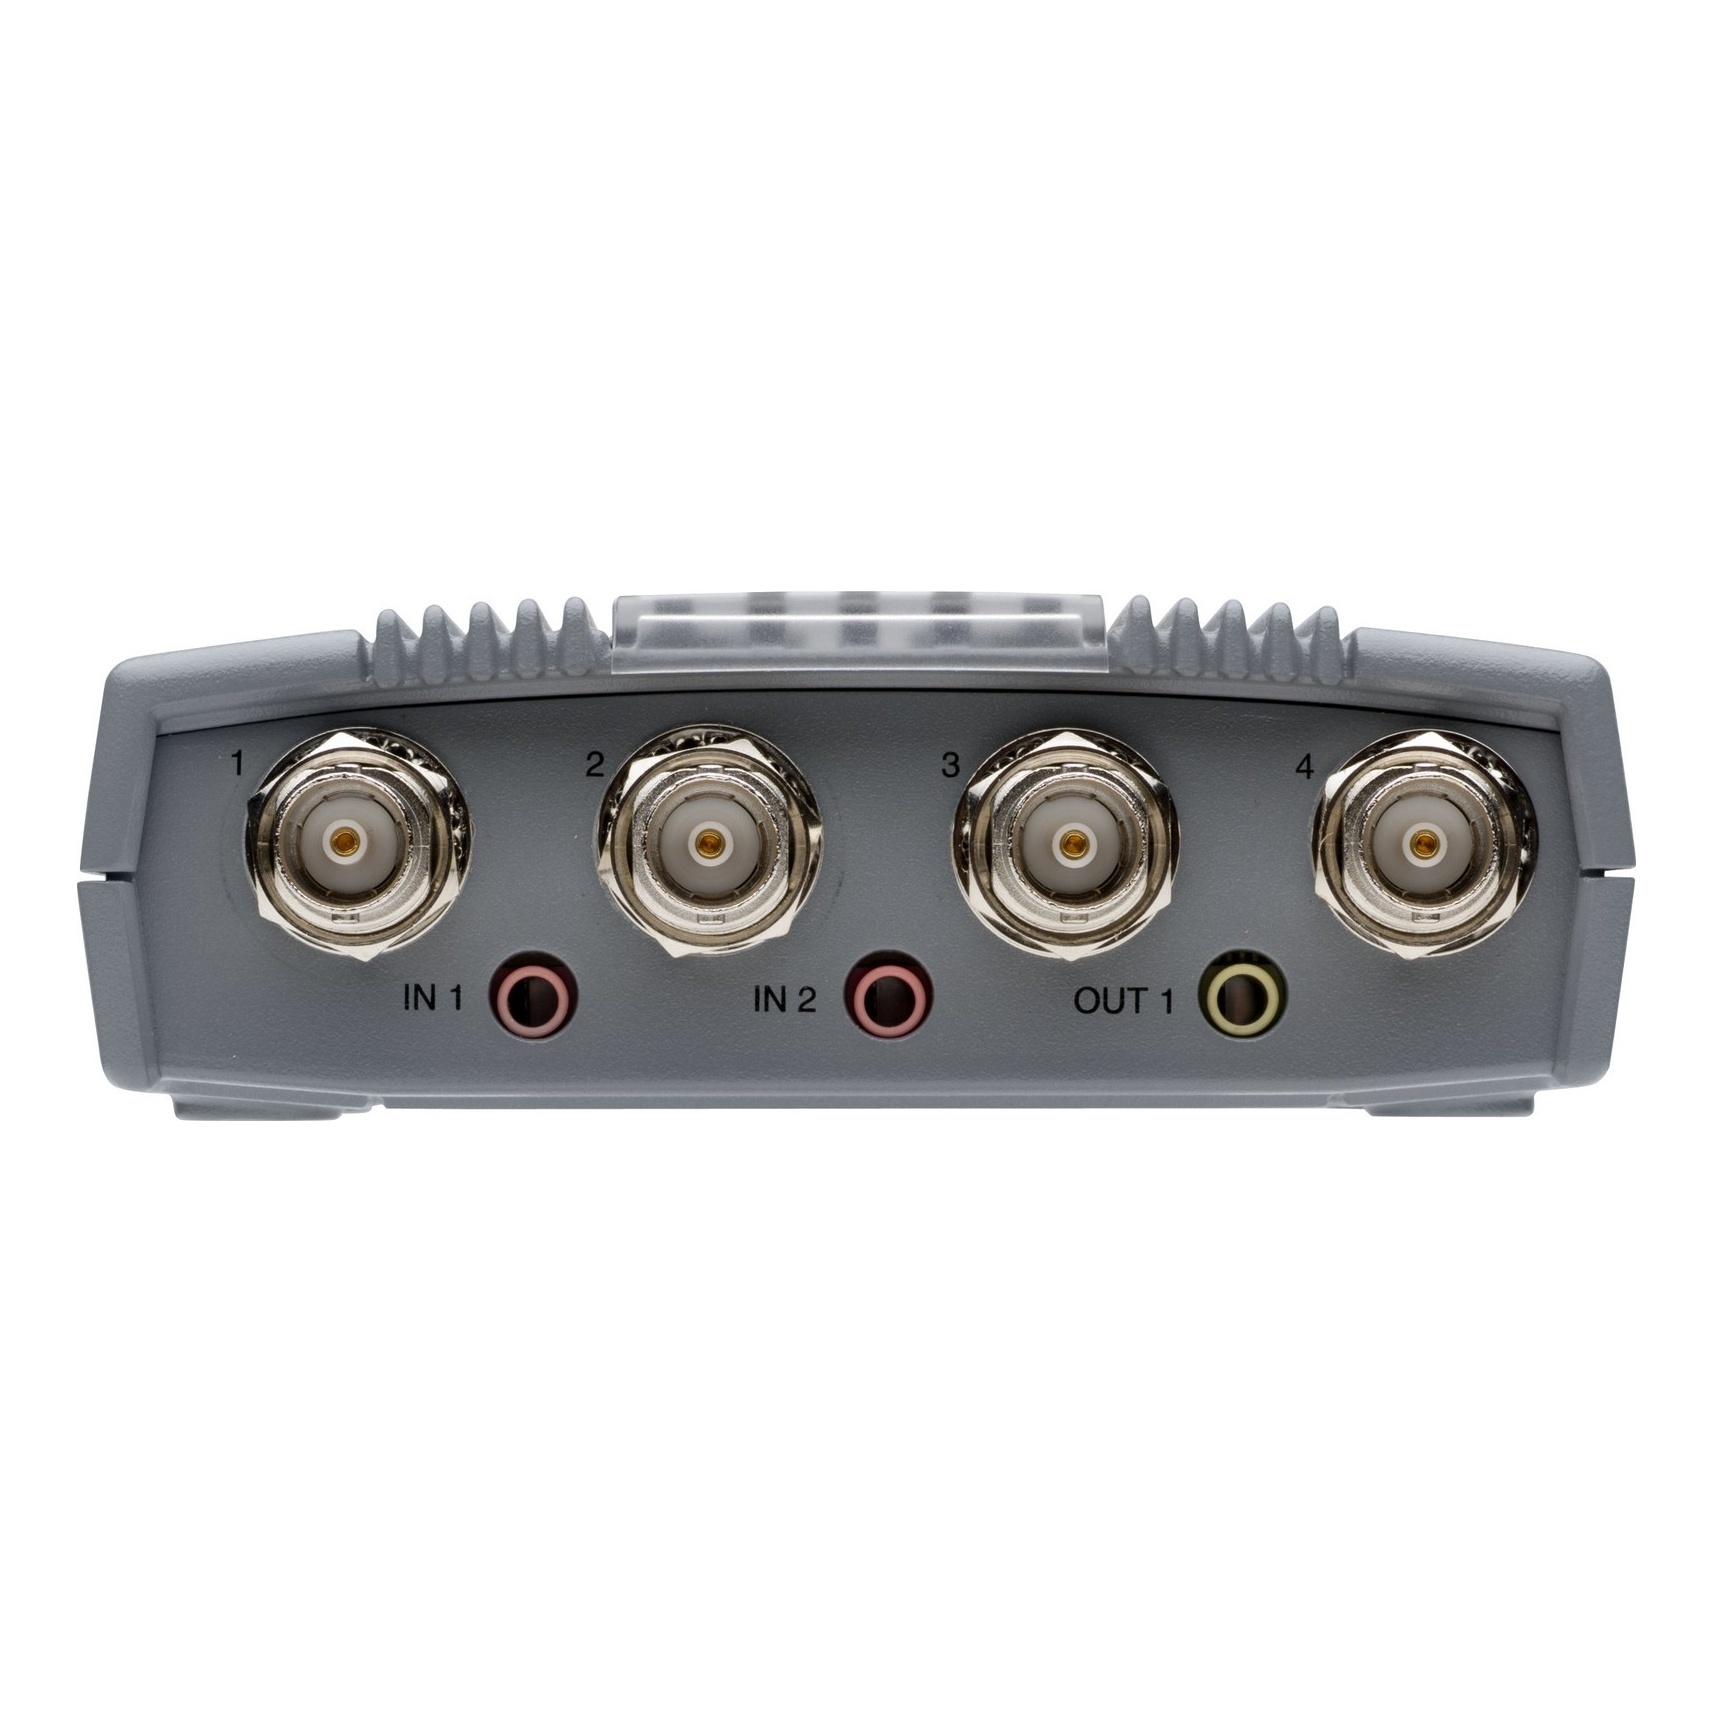 AXIS P7214 Video Encoder IP видеосервер